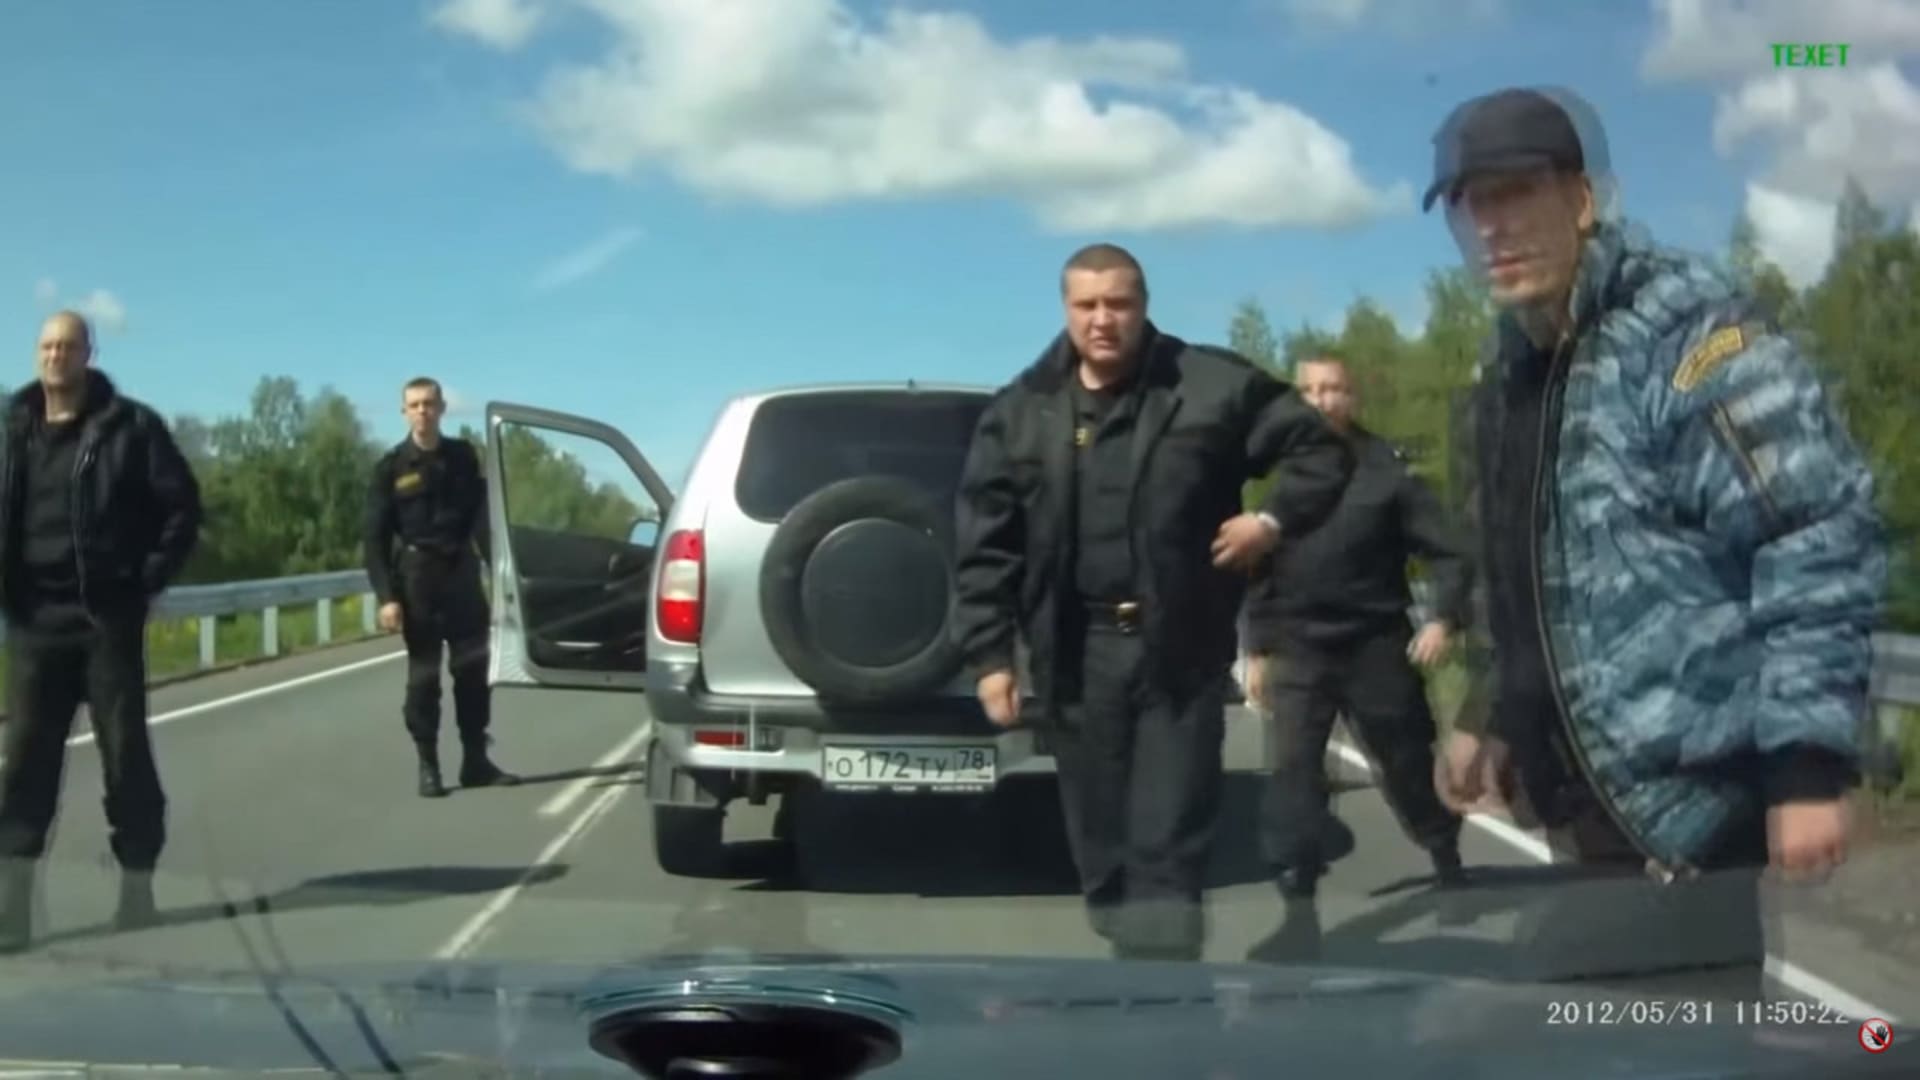 Vytrubovat ruské policisty se nevyplácí.